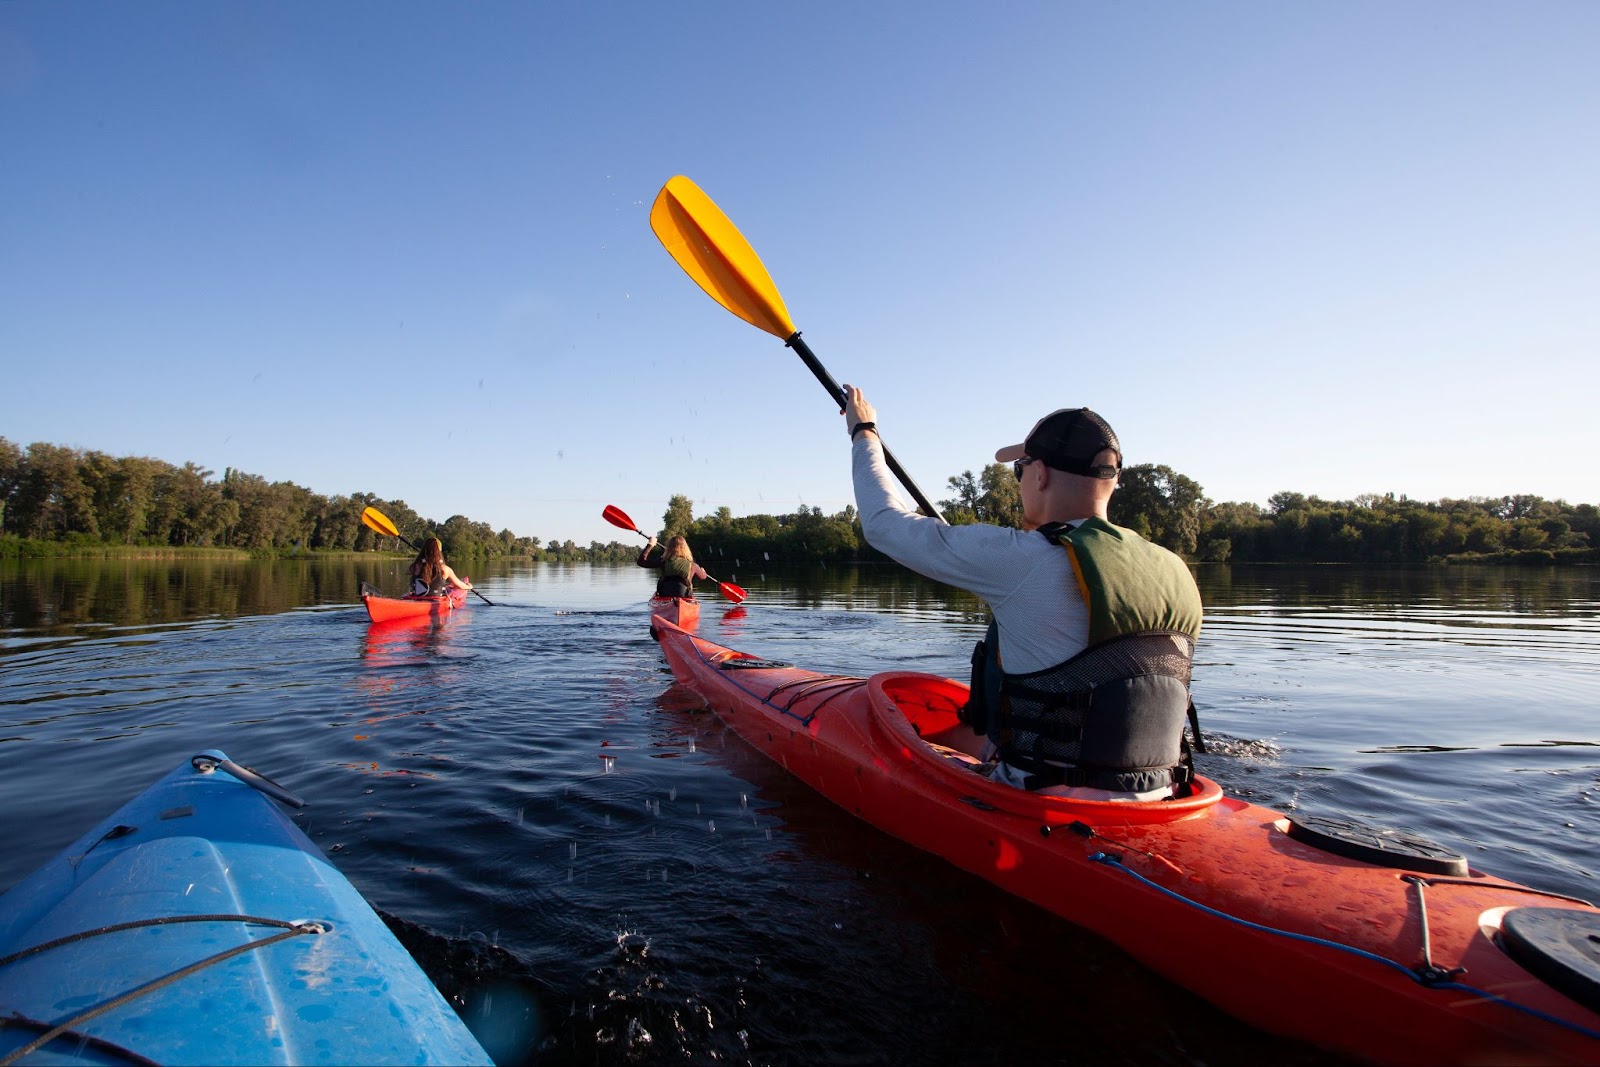 Essential Attire for Canoeing Adventures